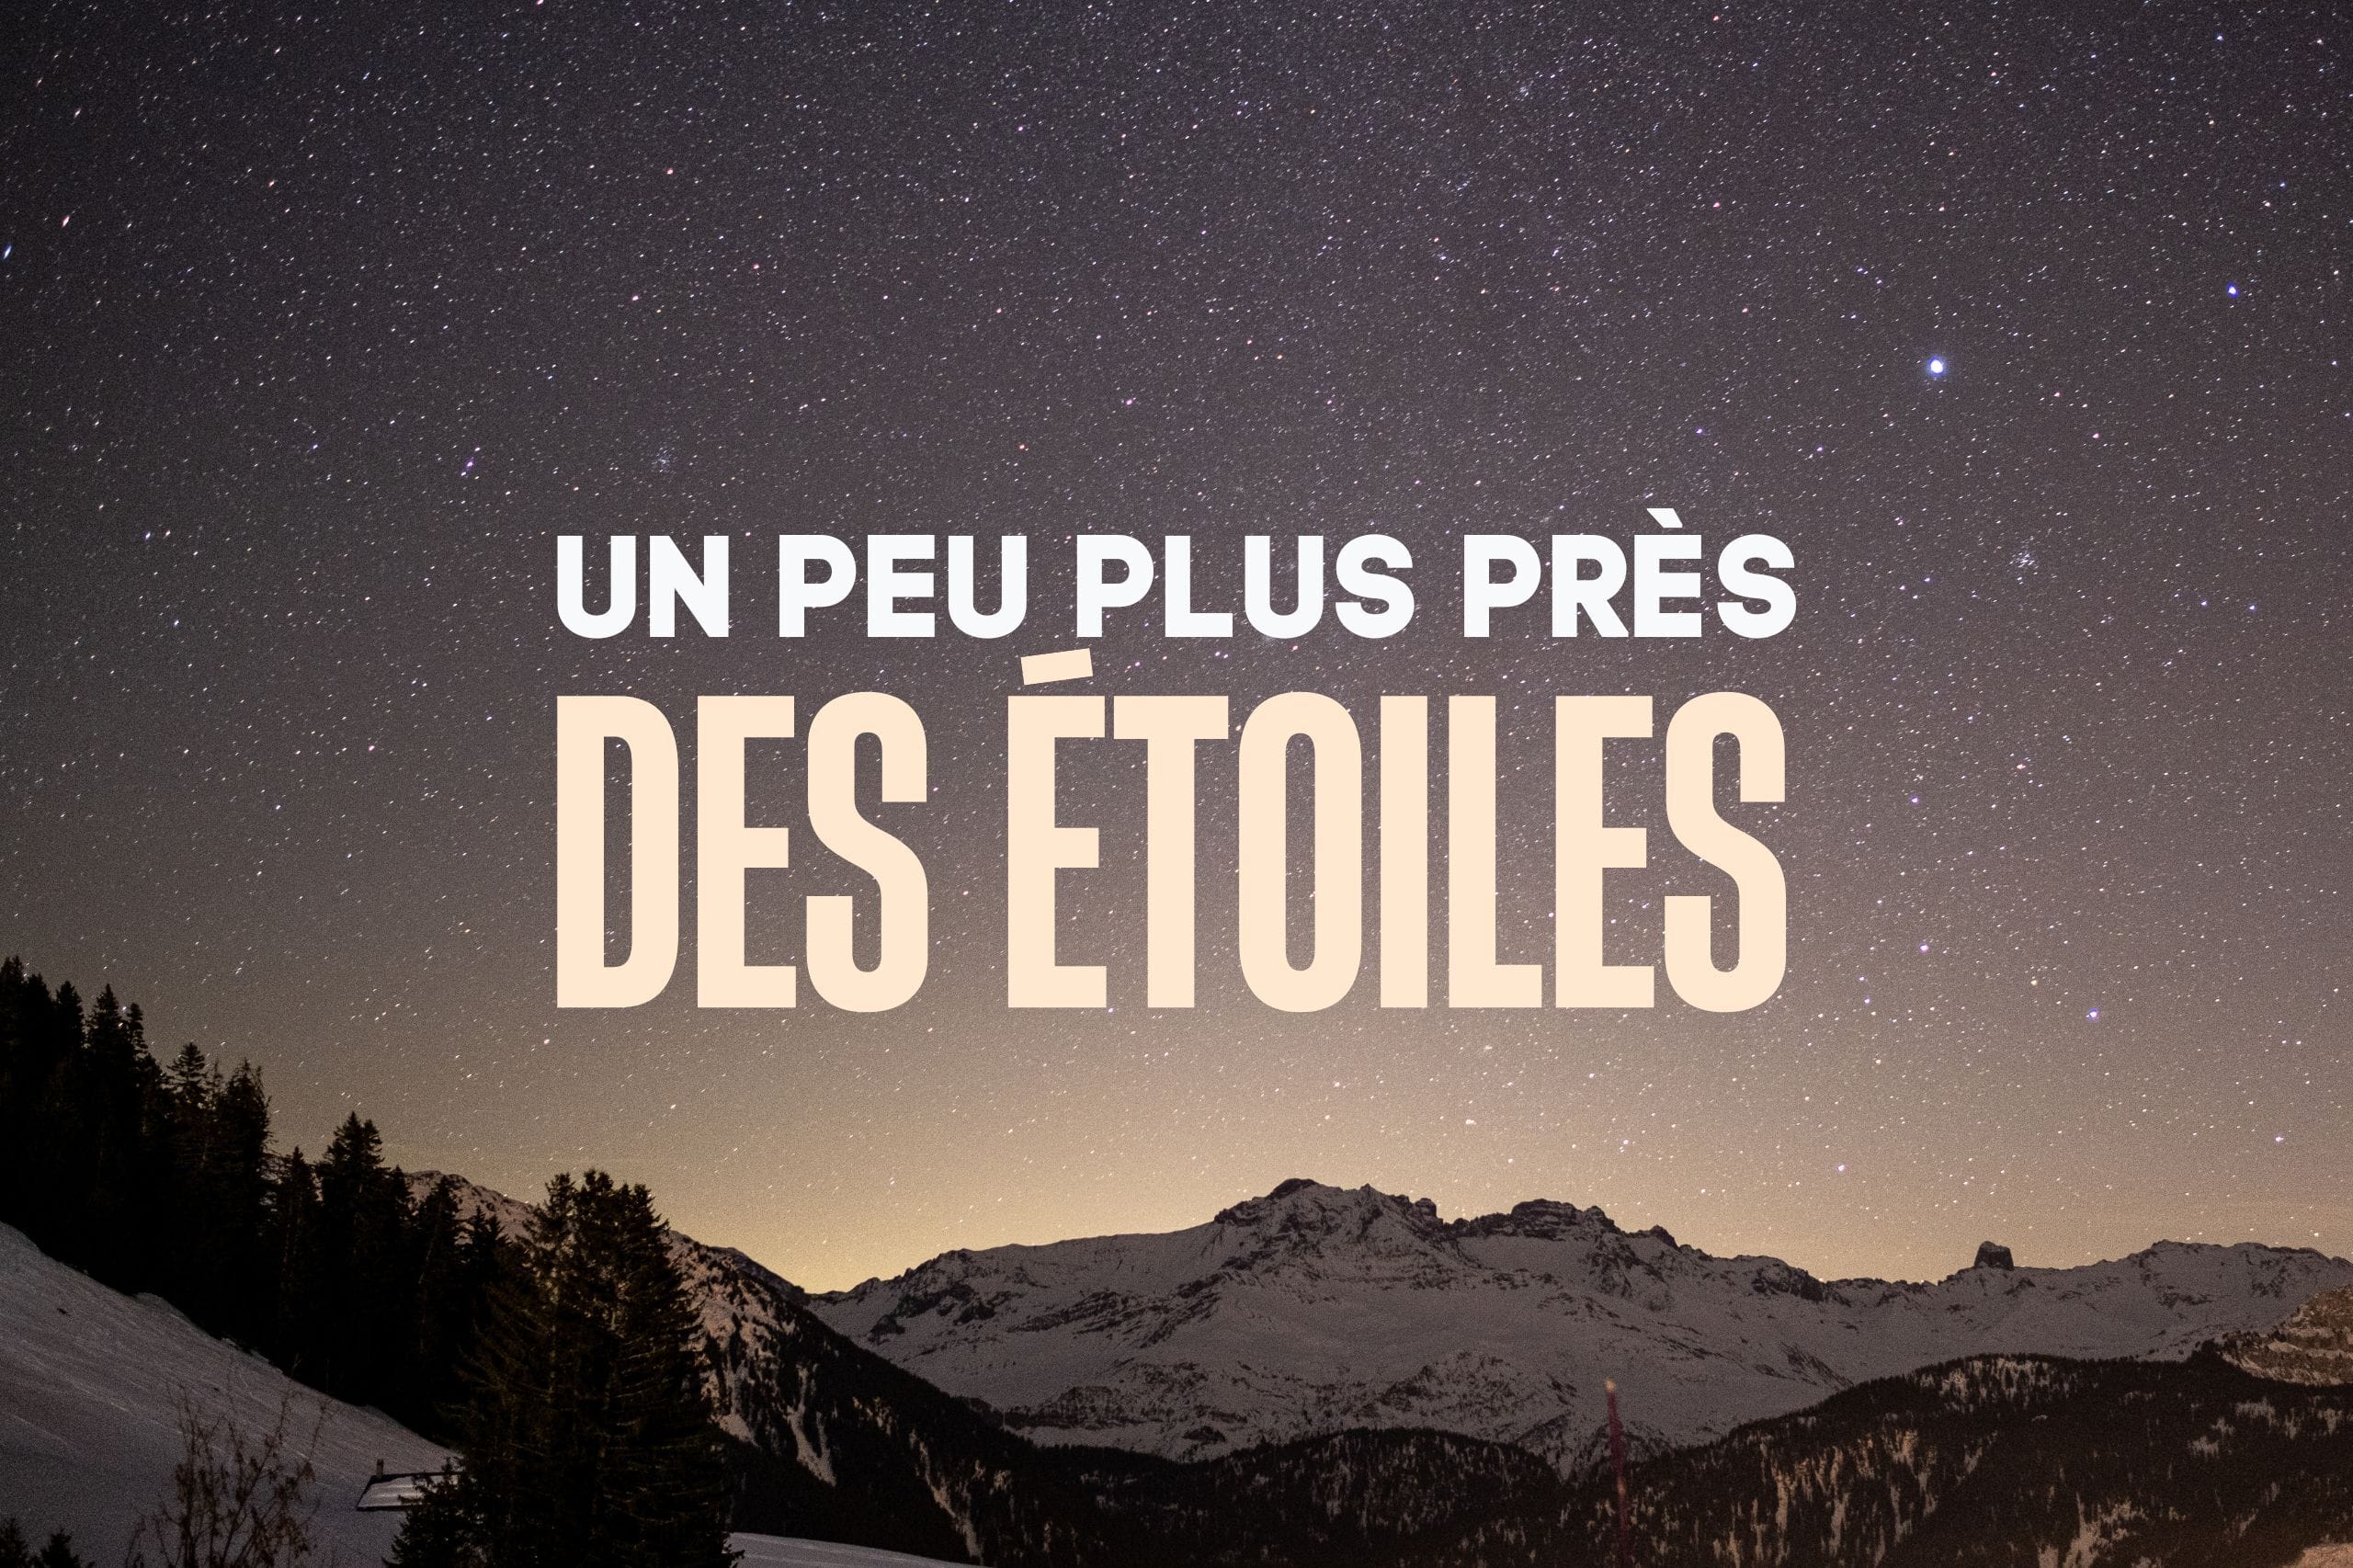 Un peu plus près des étoiles  : Week-end astronomie et randonnée dans les Pyrénées